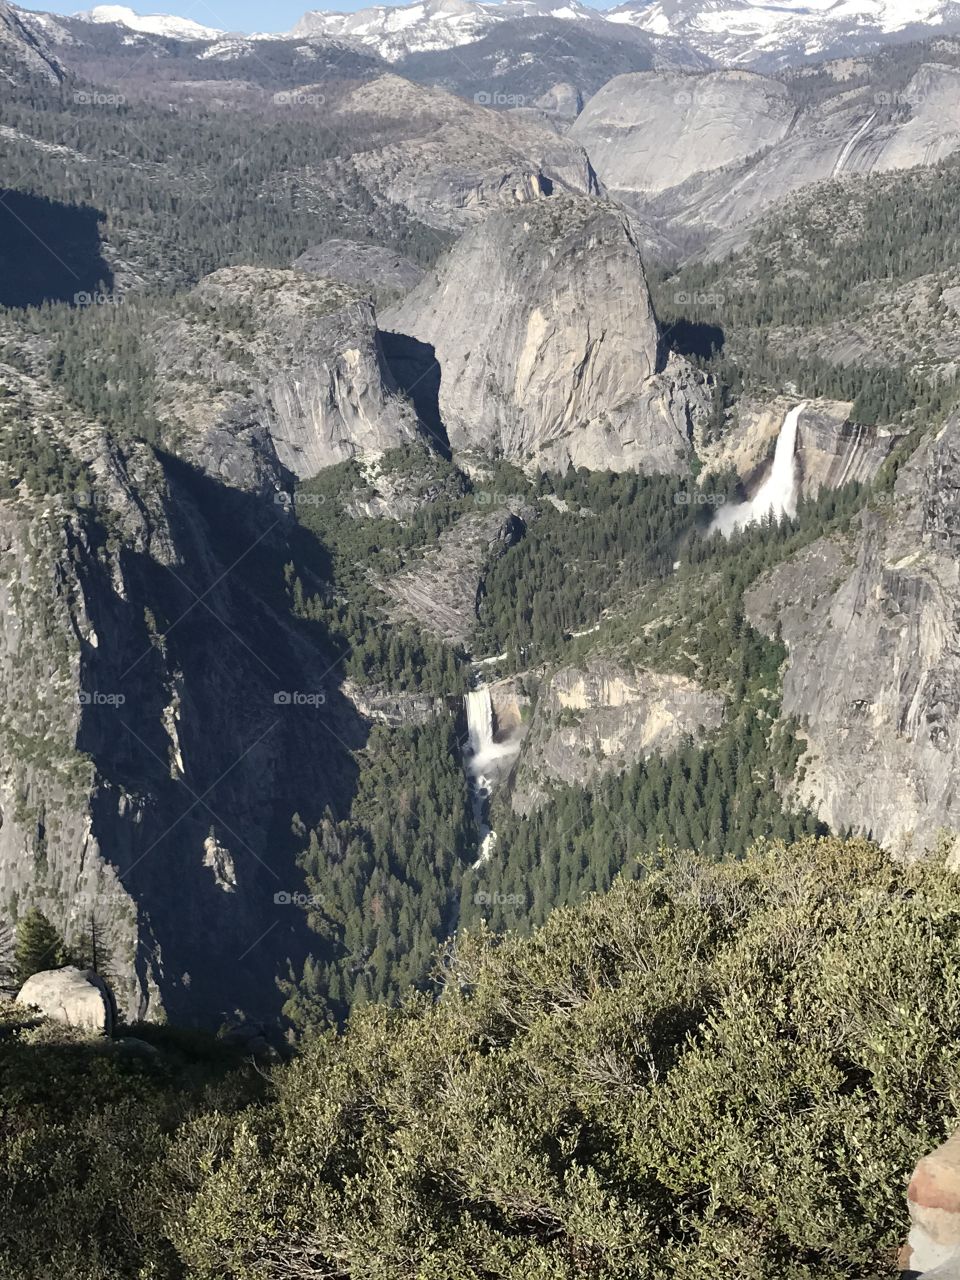 Yosemite overwatch